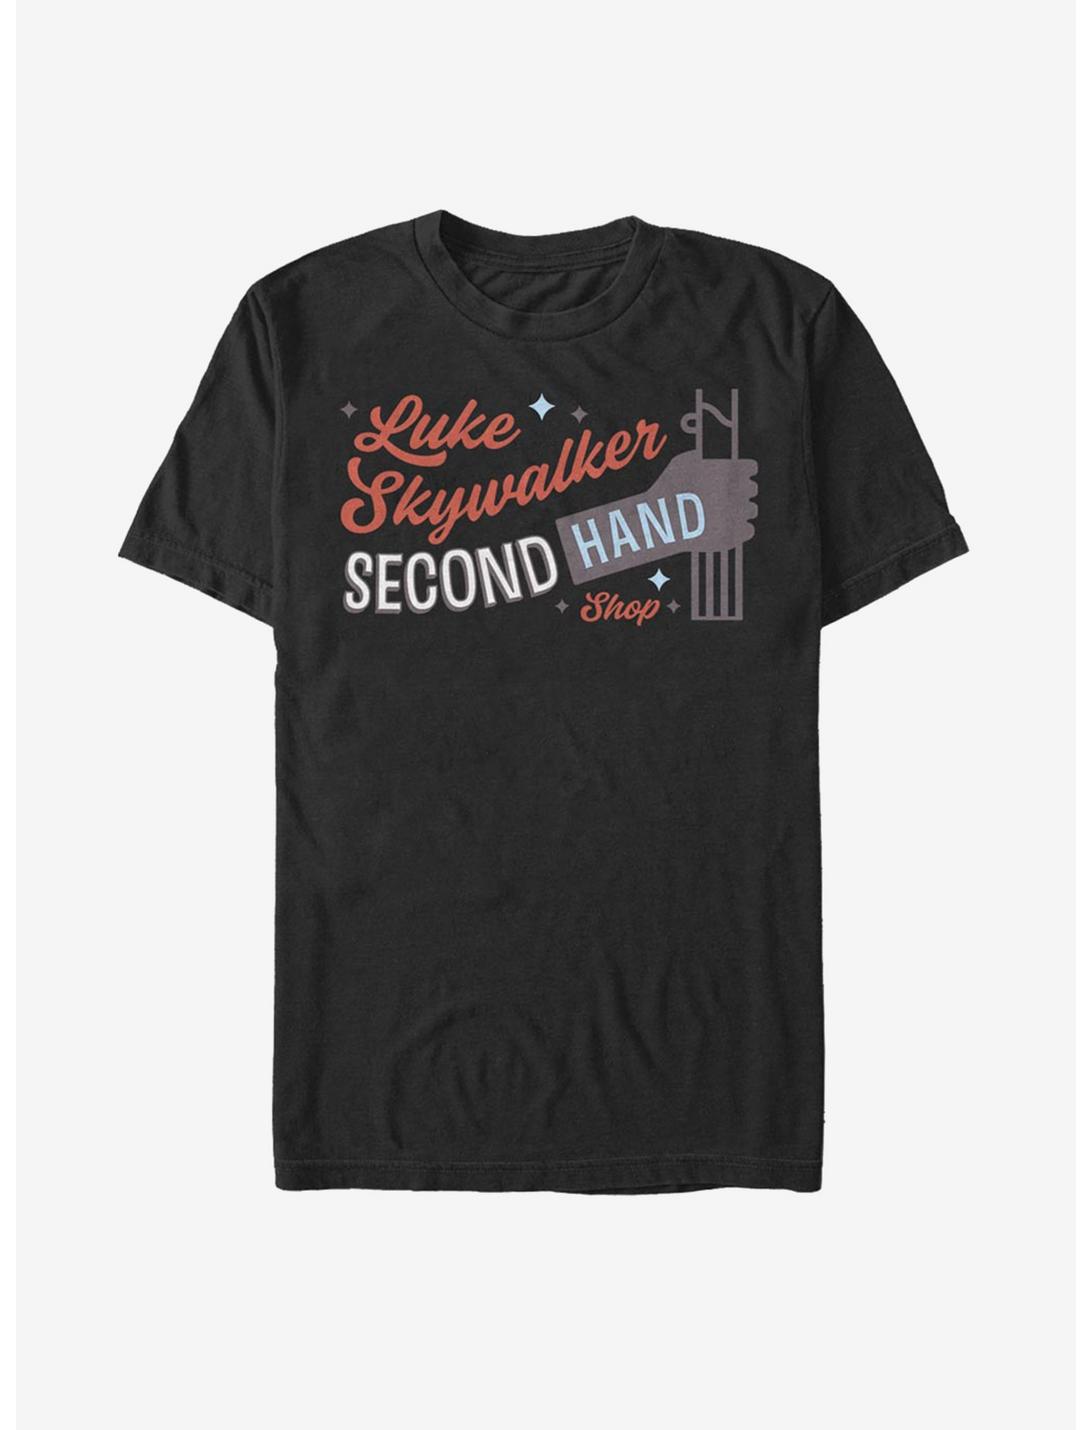 Star Wars Skywalker Second Hand T-Shirt, BLACK, hi-res